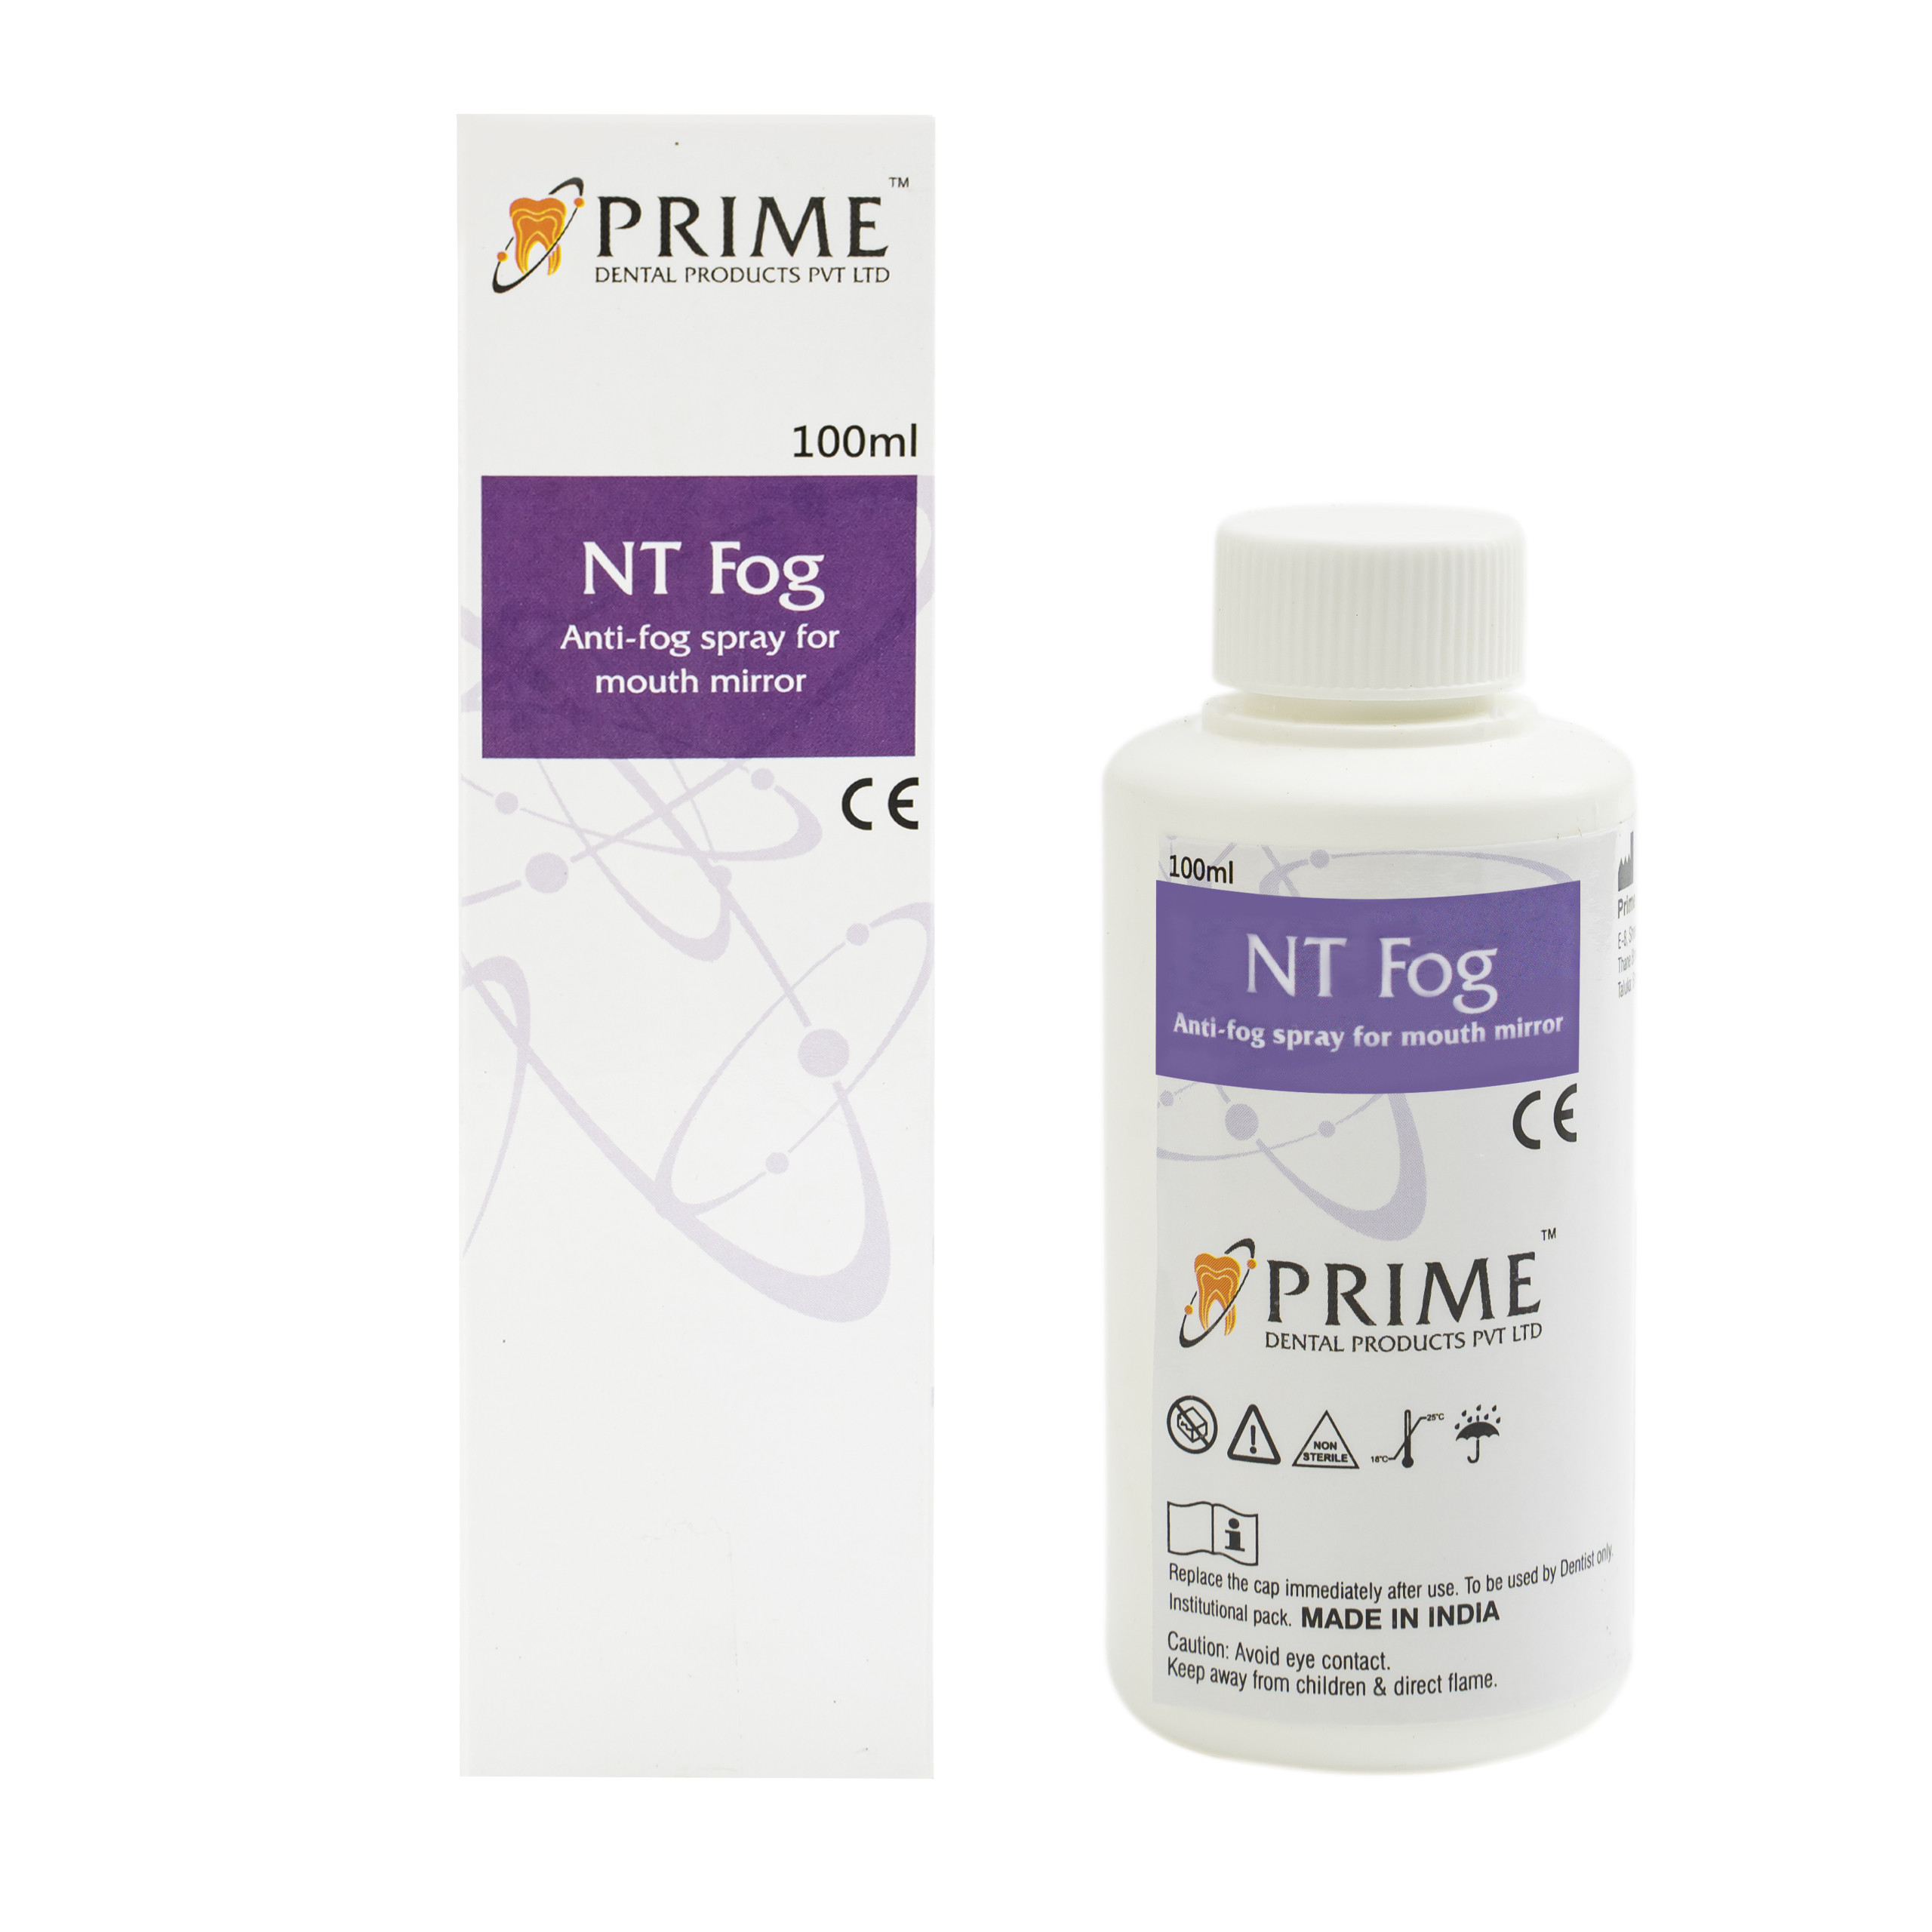 Prime NT Fog